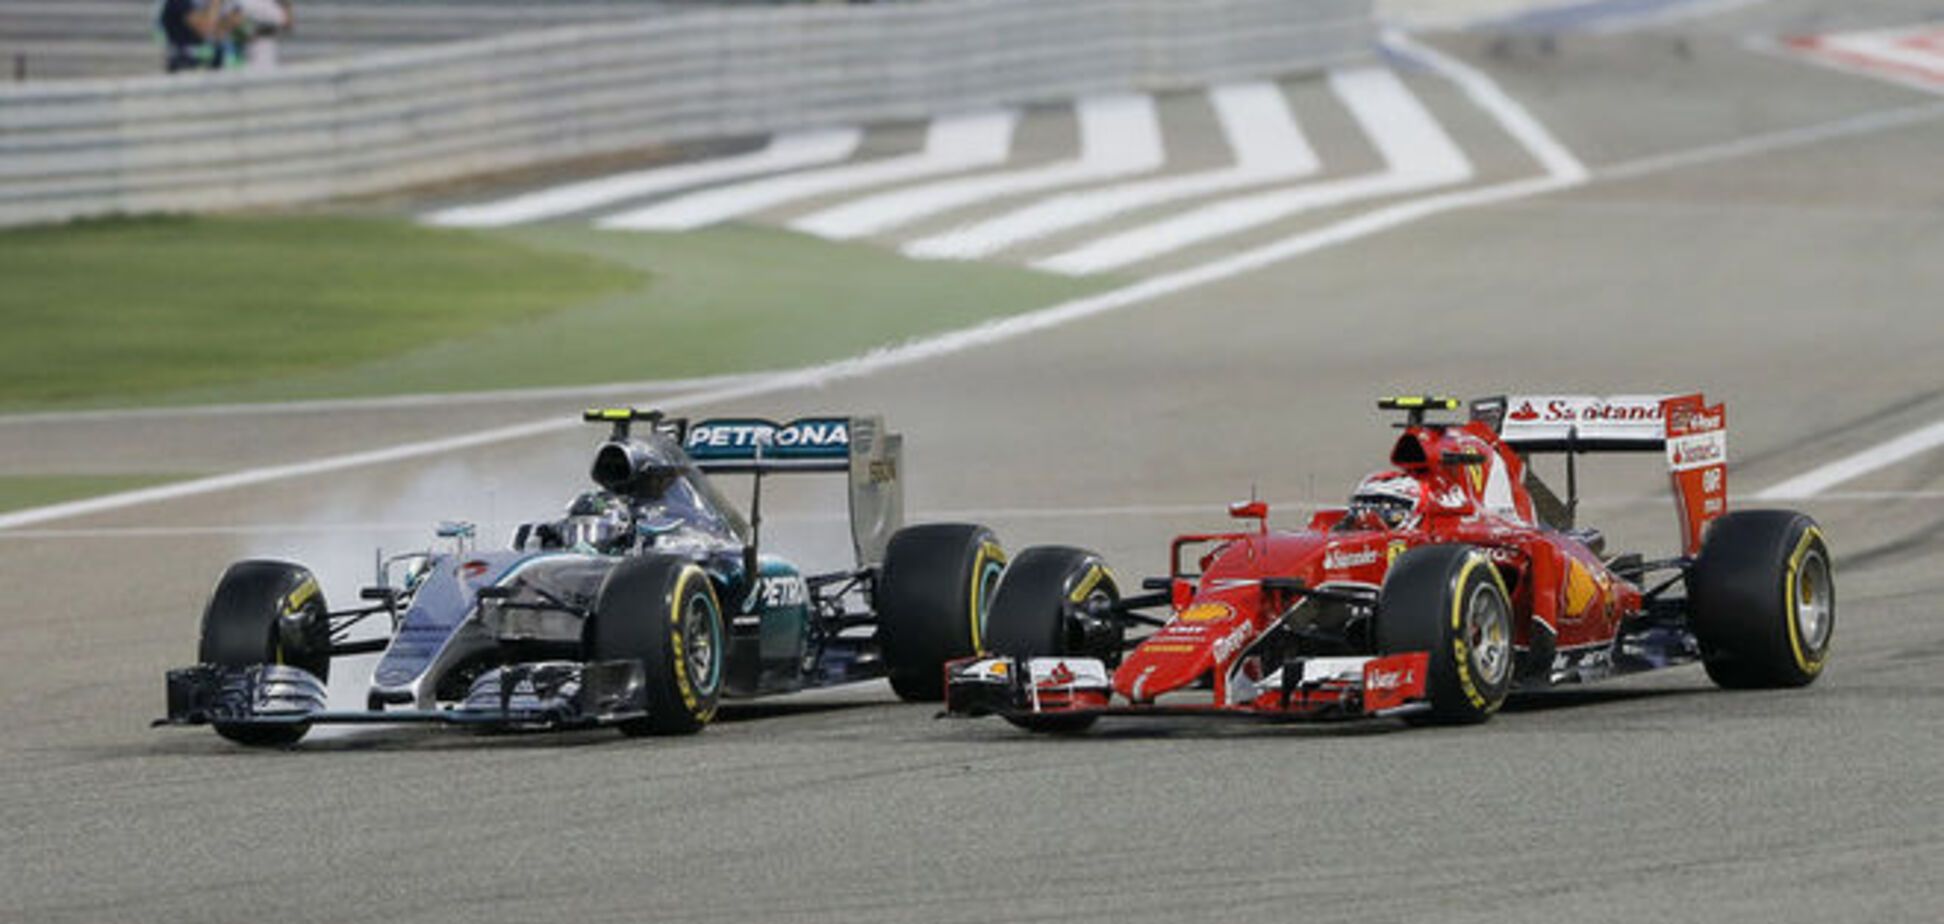 Райкконен сенсационно 'разбил' Mercedes на Гран-при Бахрейна